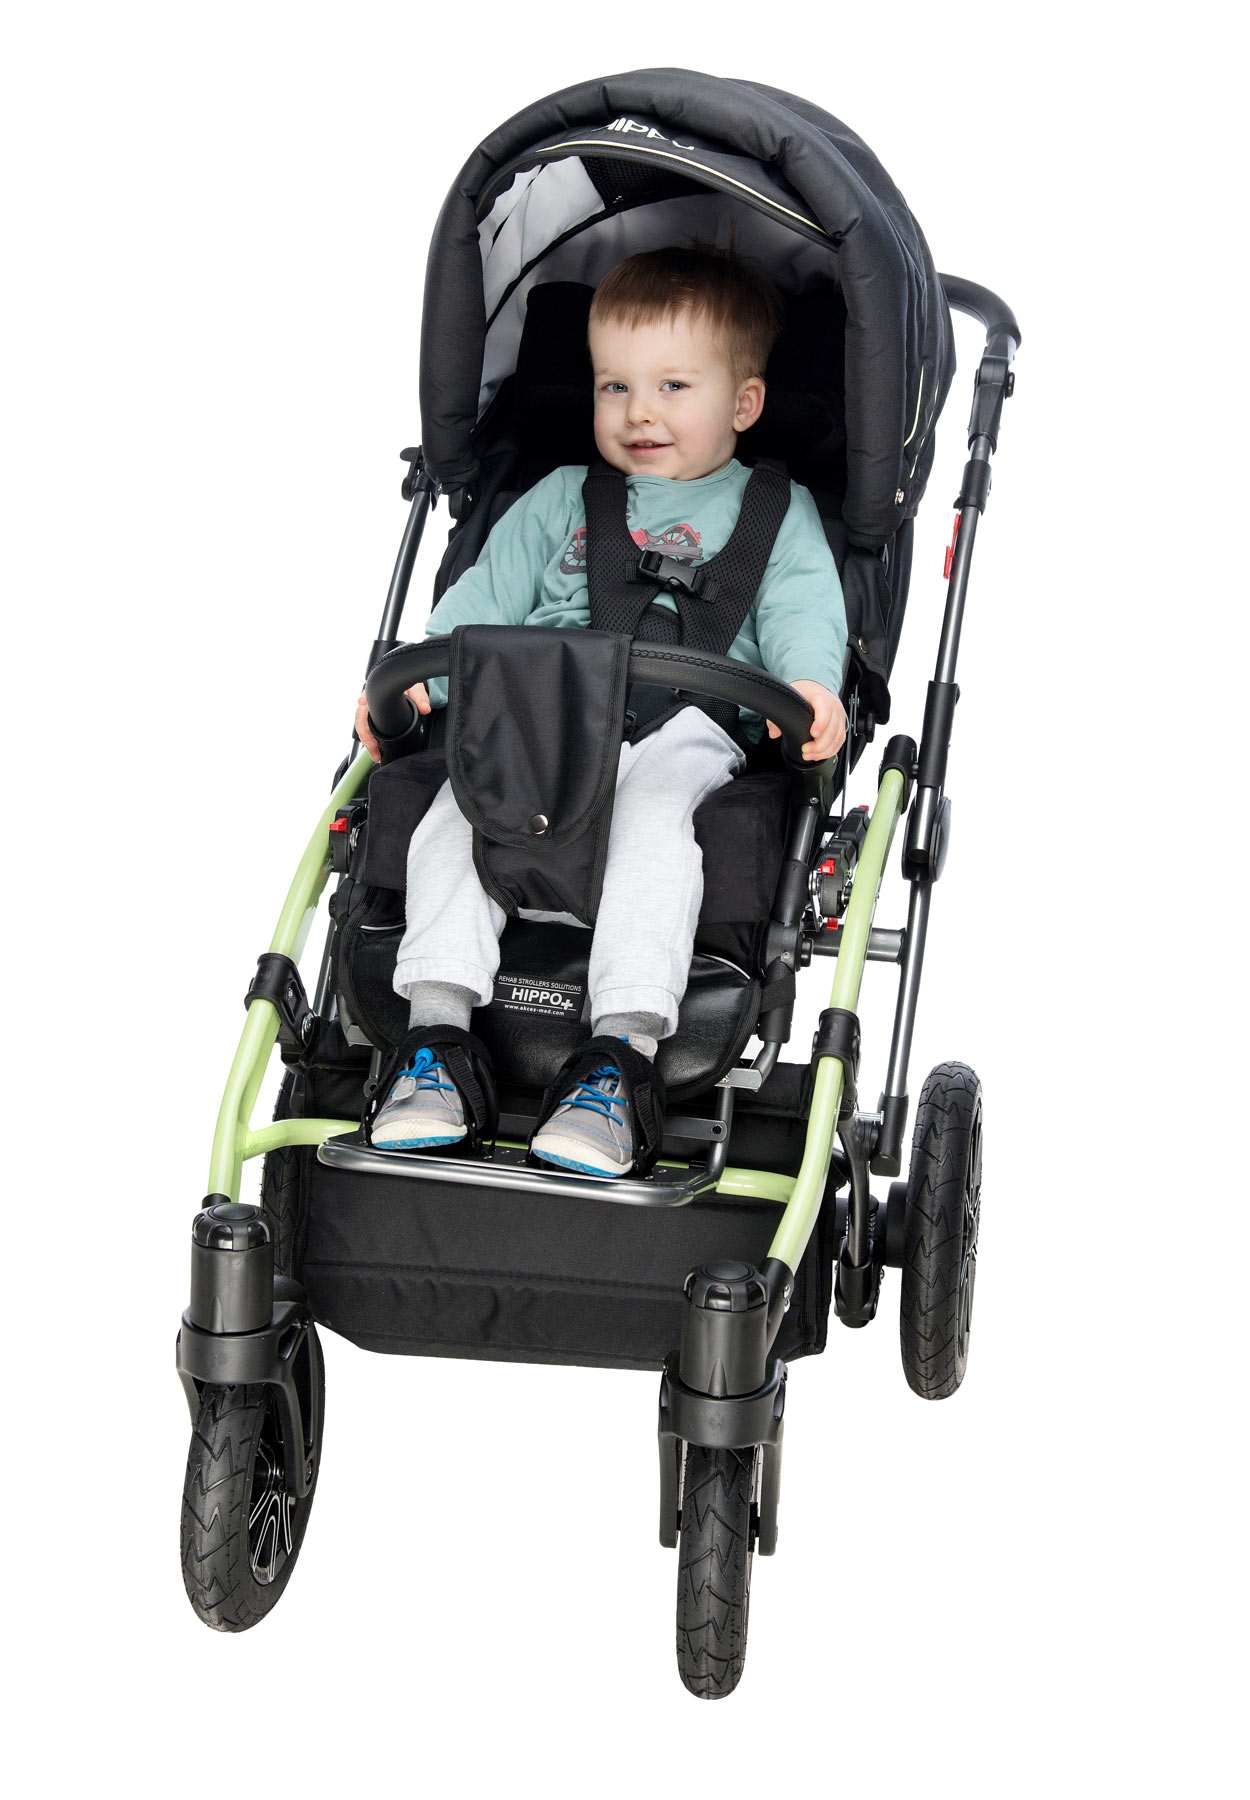 Коляска для детей с года. Кресло-коляска для детей с ДЦП Akces-med Гиппо-2. Гиппо коляска для ДЦП 2. Гиппо коляска для ДЦП 2 размер. Детская инвалидная коляска AKCESMED Гиппо.